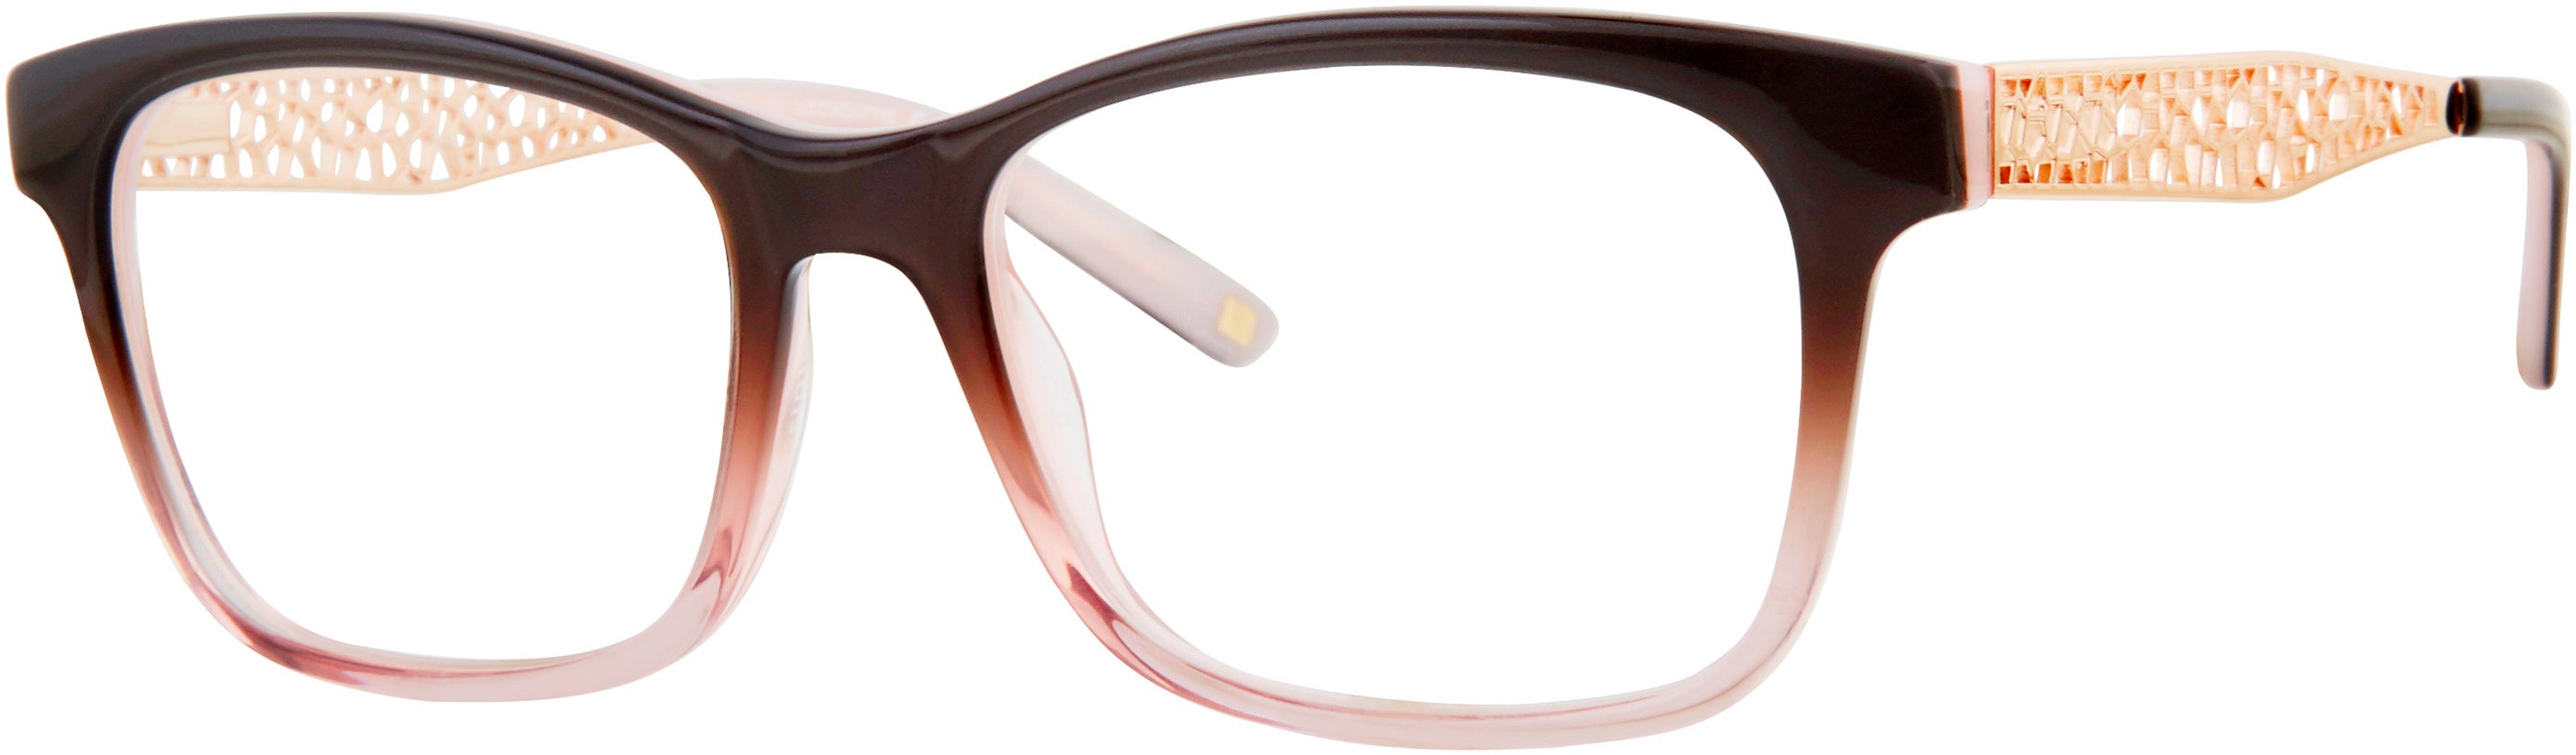  Liz Claiborne 642 Square Eyeglasses 0HAQ-0HAQ  Gray Pink (00 Demo Lens)